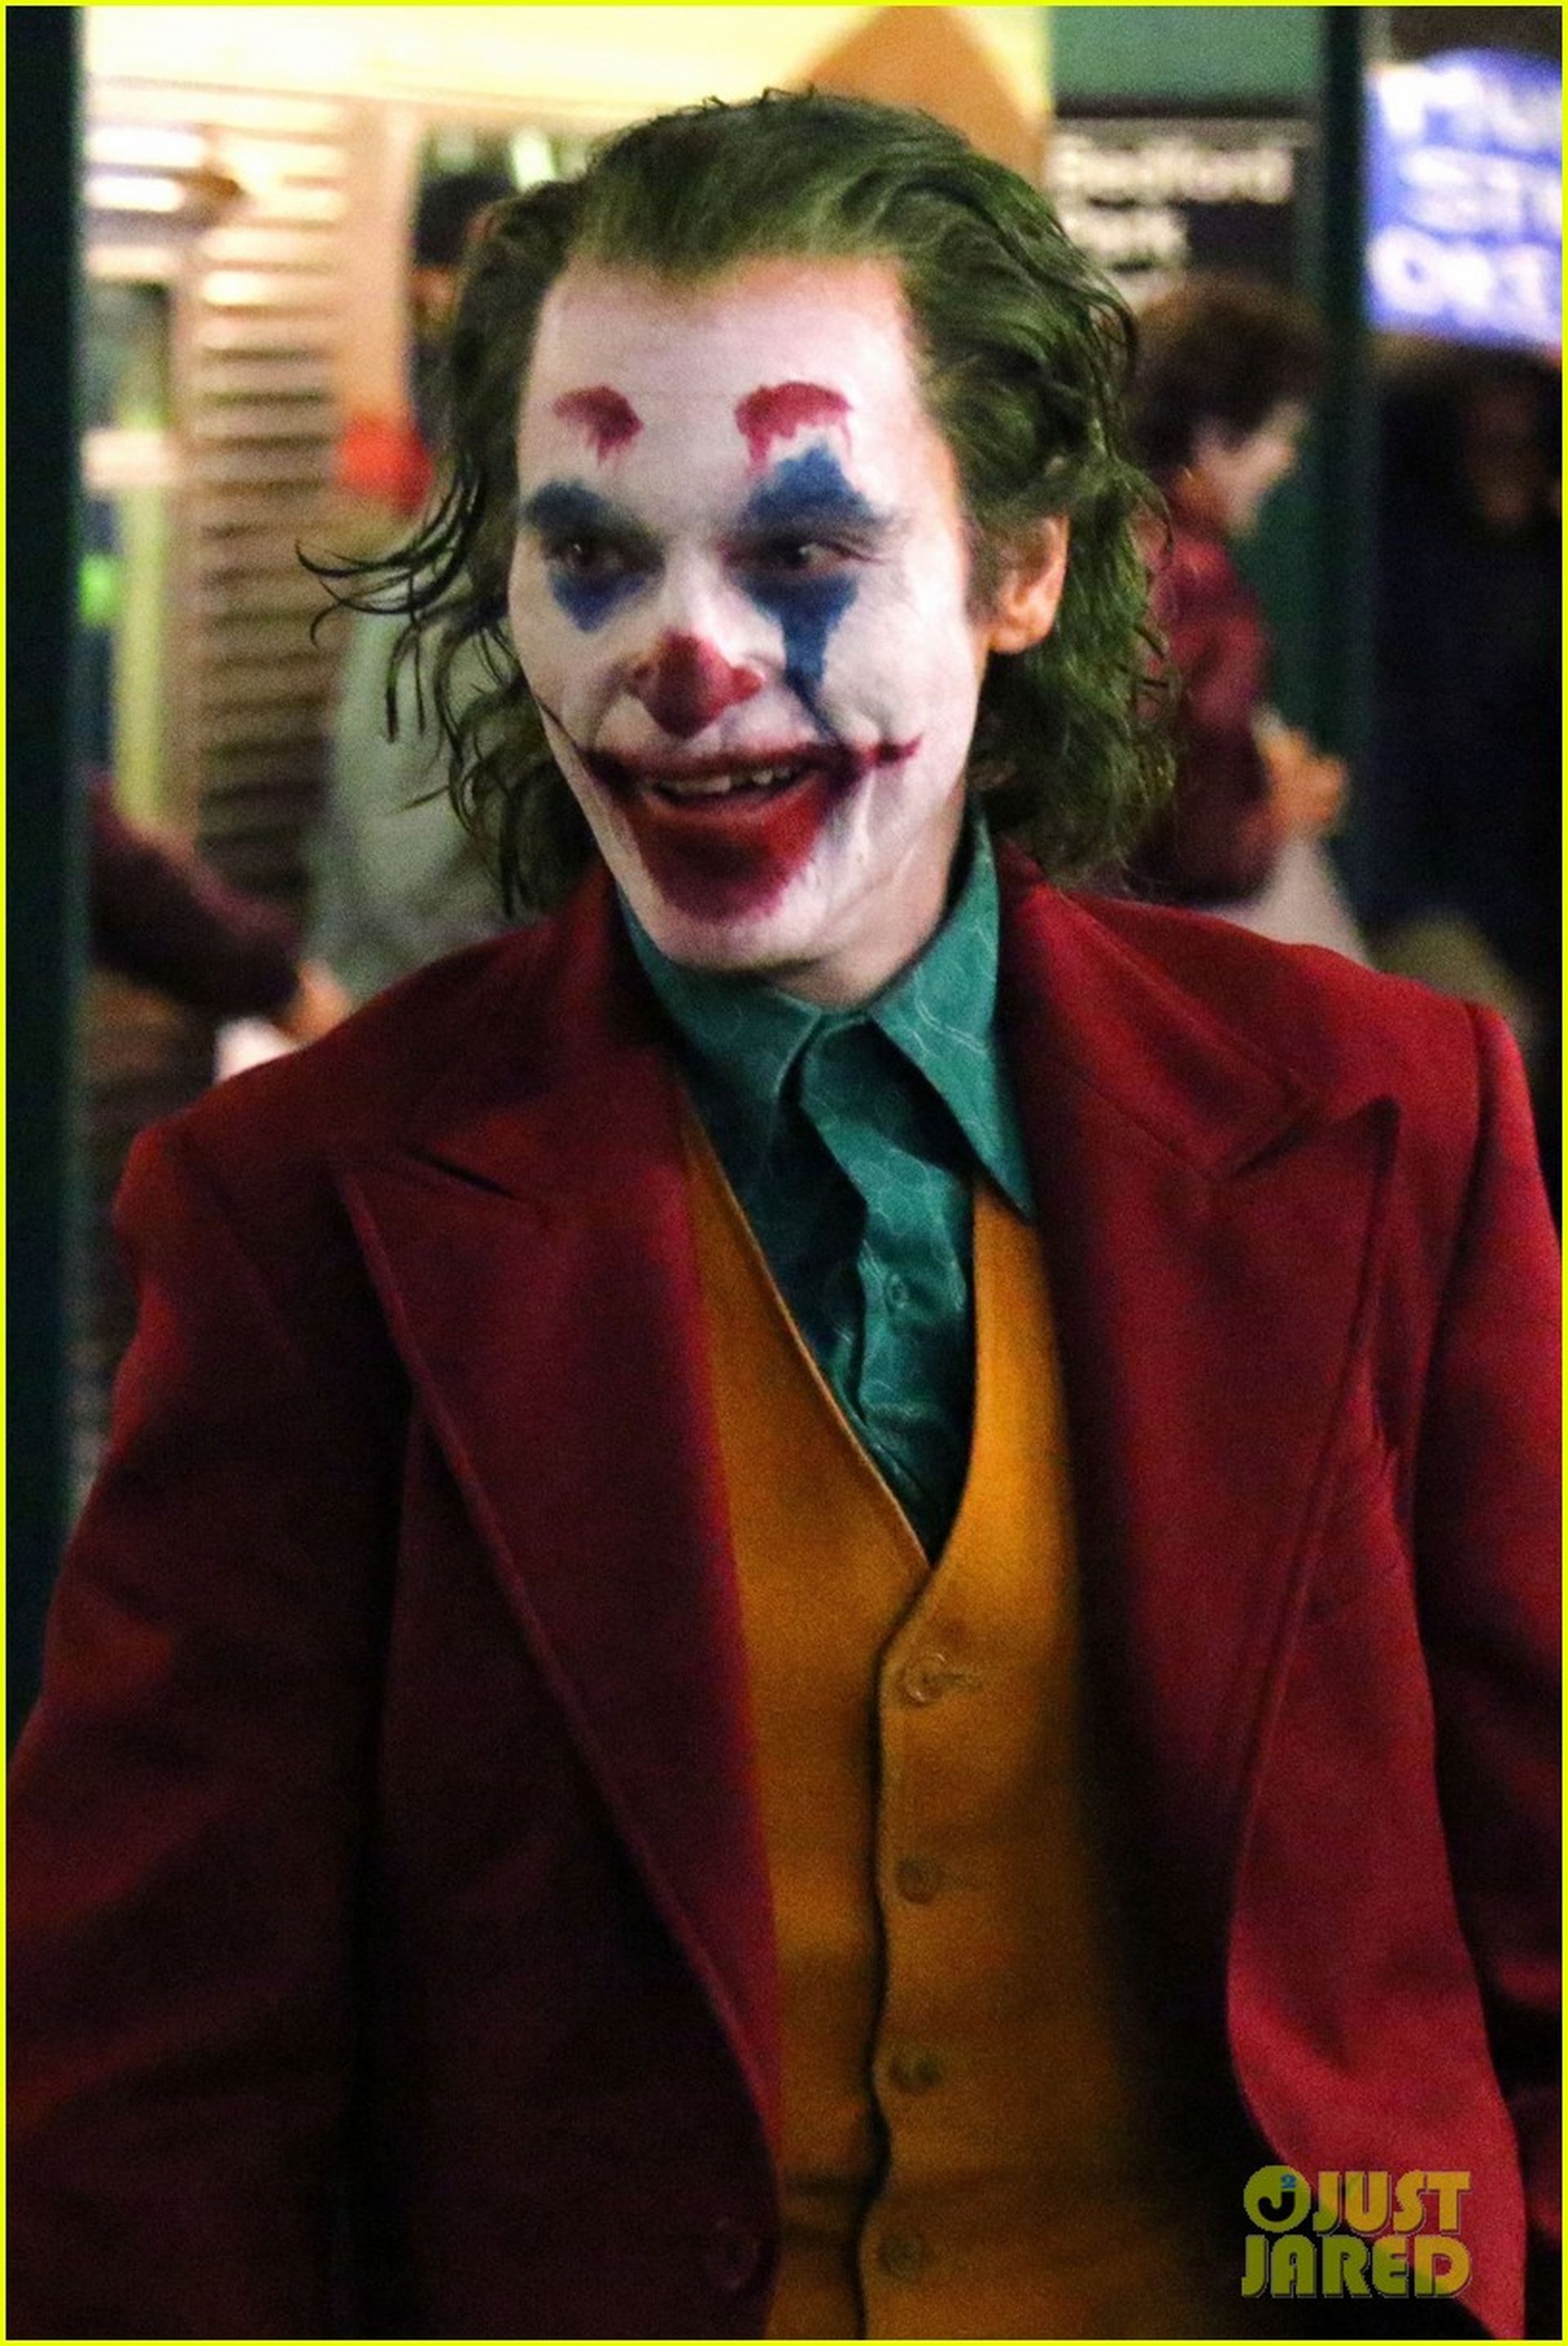 Joaquin Phoenix como el Joker